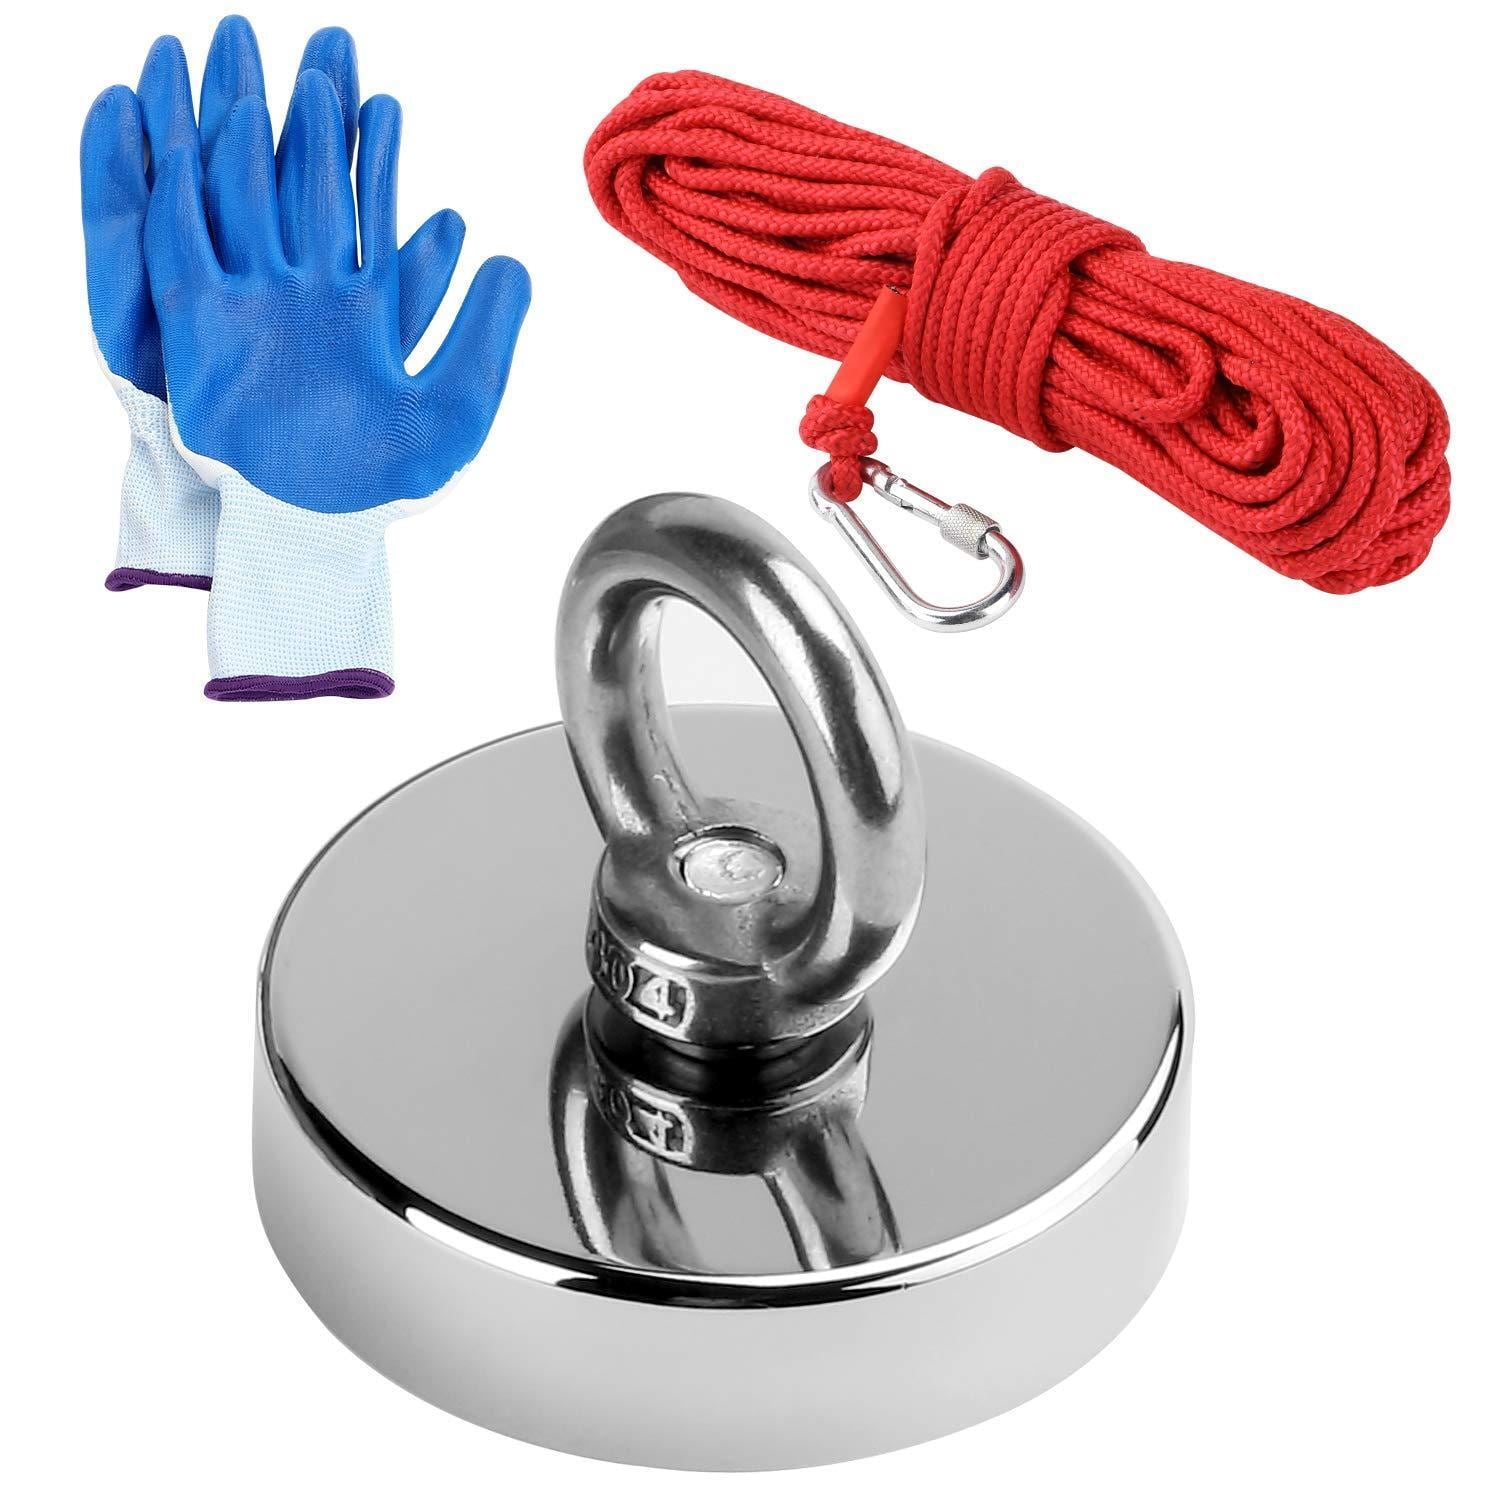 Neodymium magnet / fiskemagnet kg reb og handsker Elgiganten